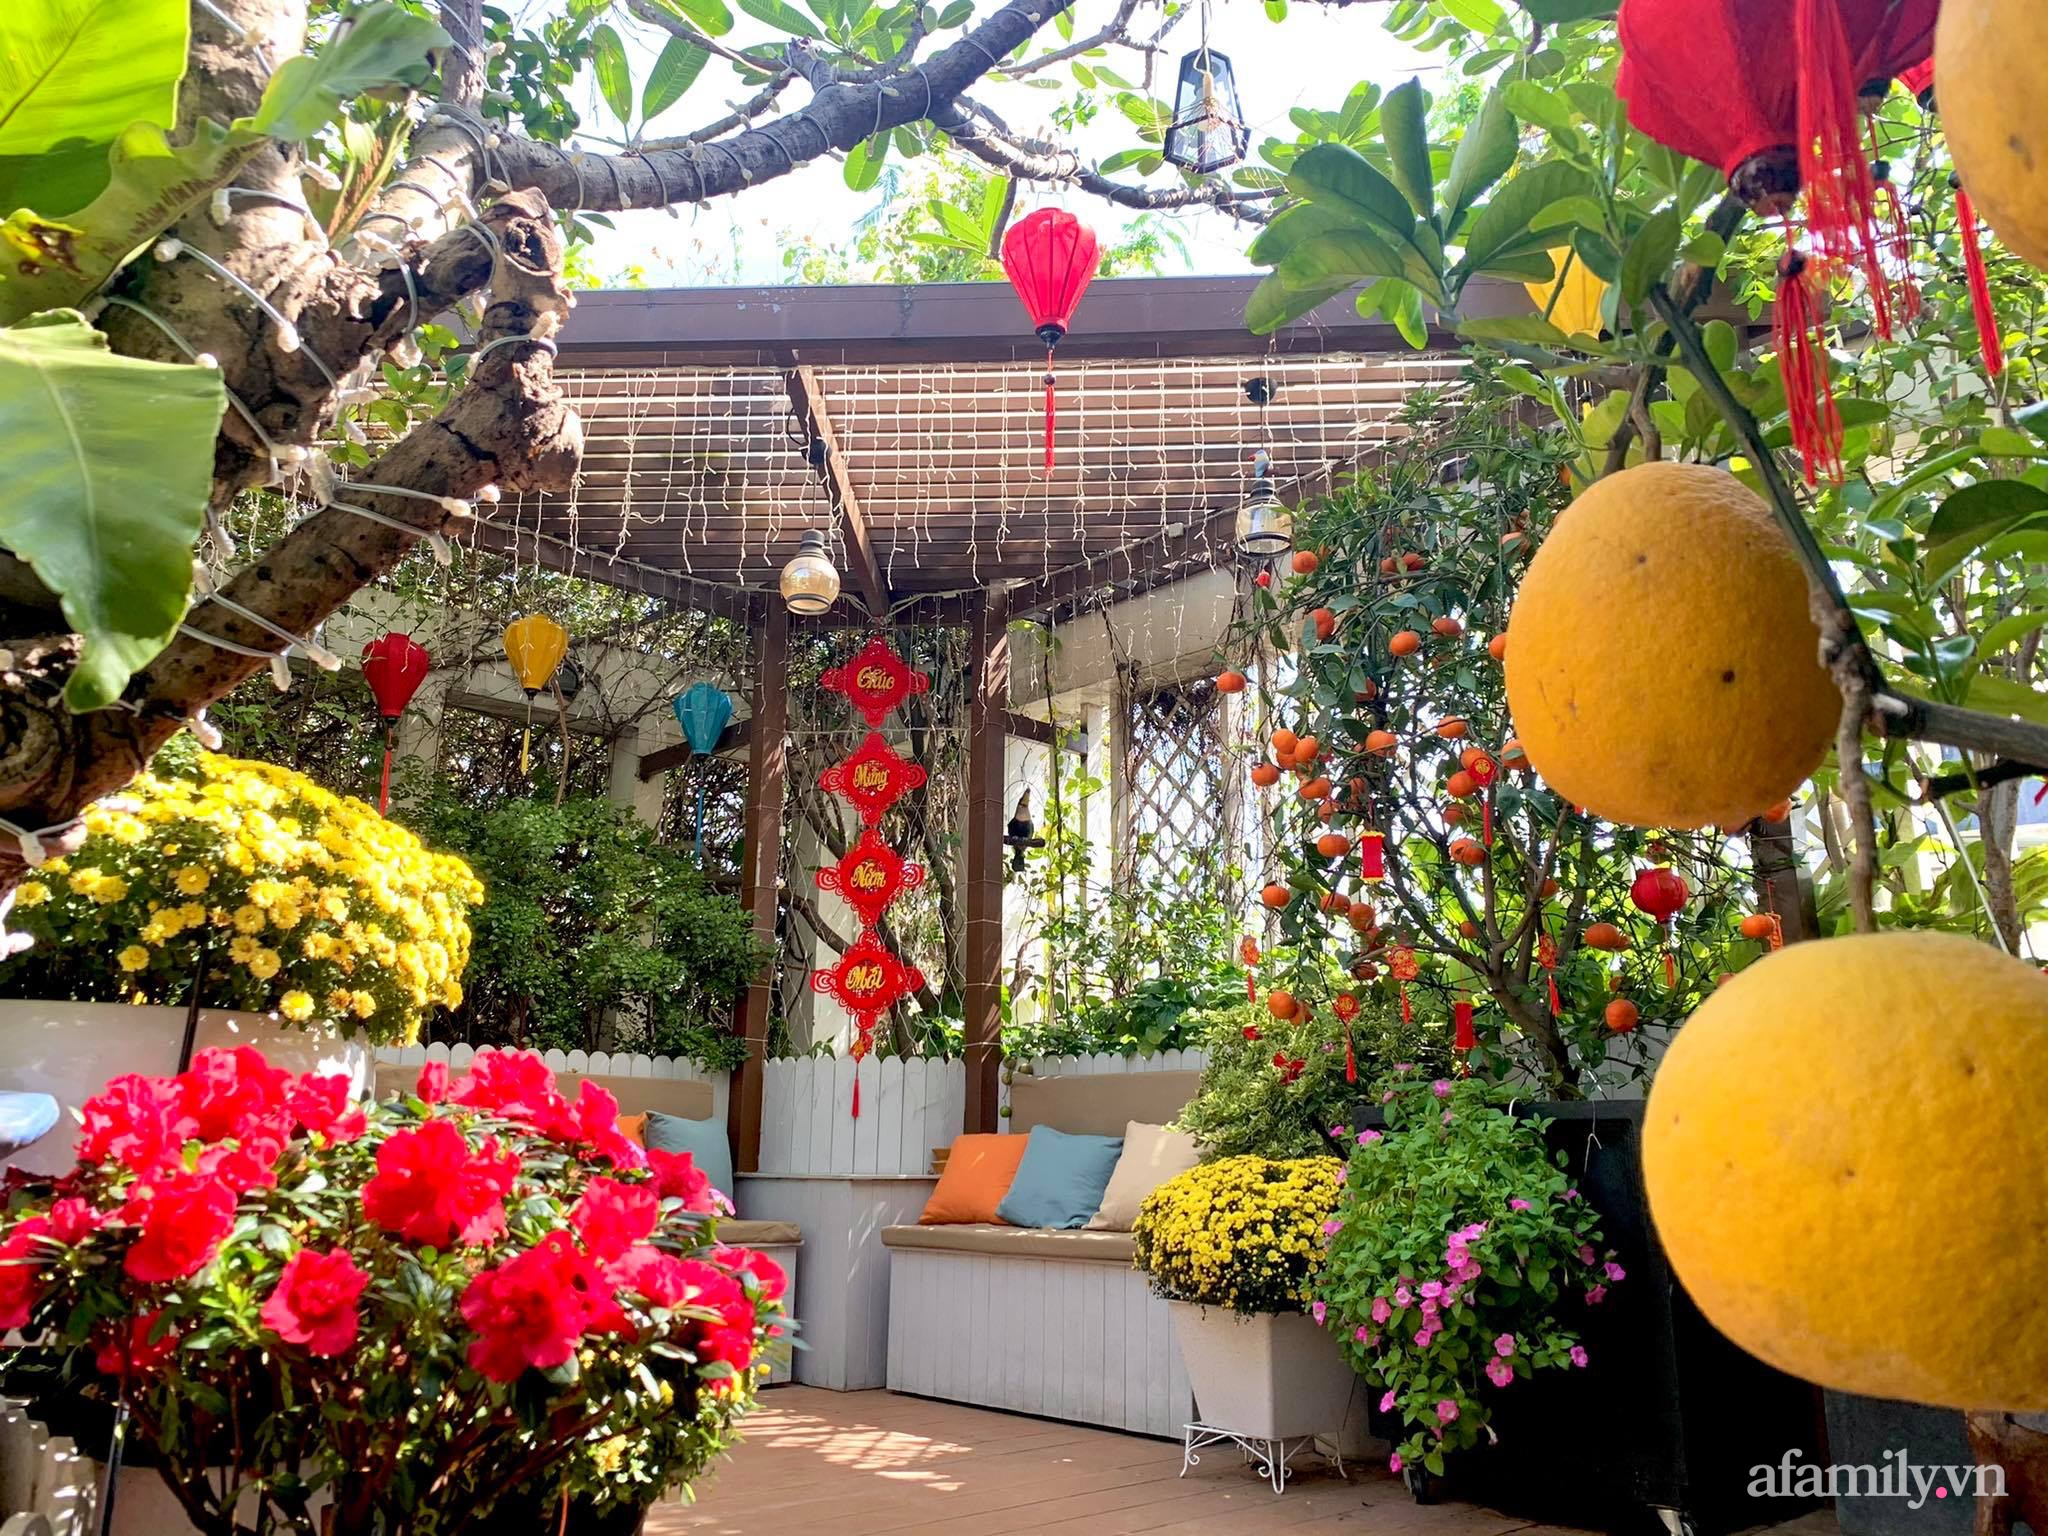 Nữ giám đốc Sài Gòn mang sắc màu Tết truyền thống làm đẹp cho khu vườn sân thượng - Ảnh 3.